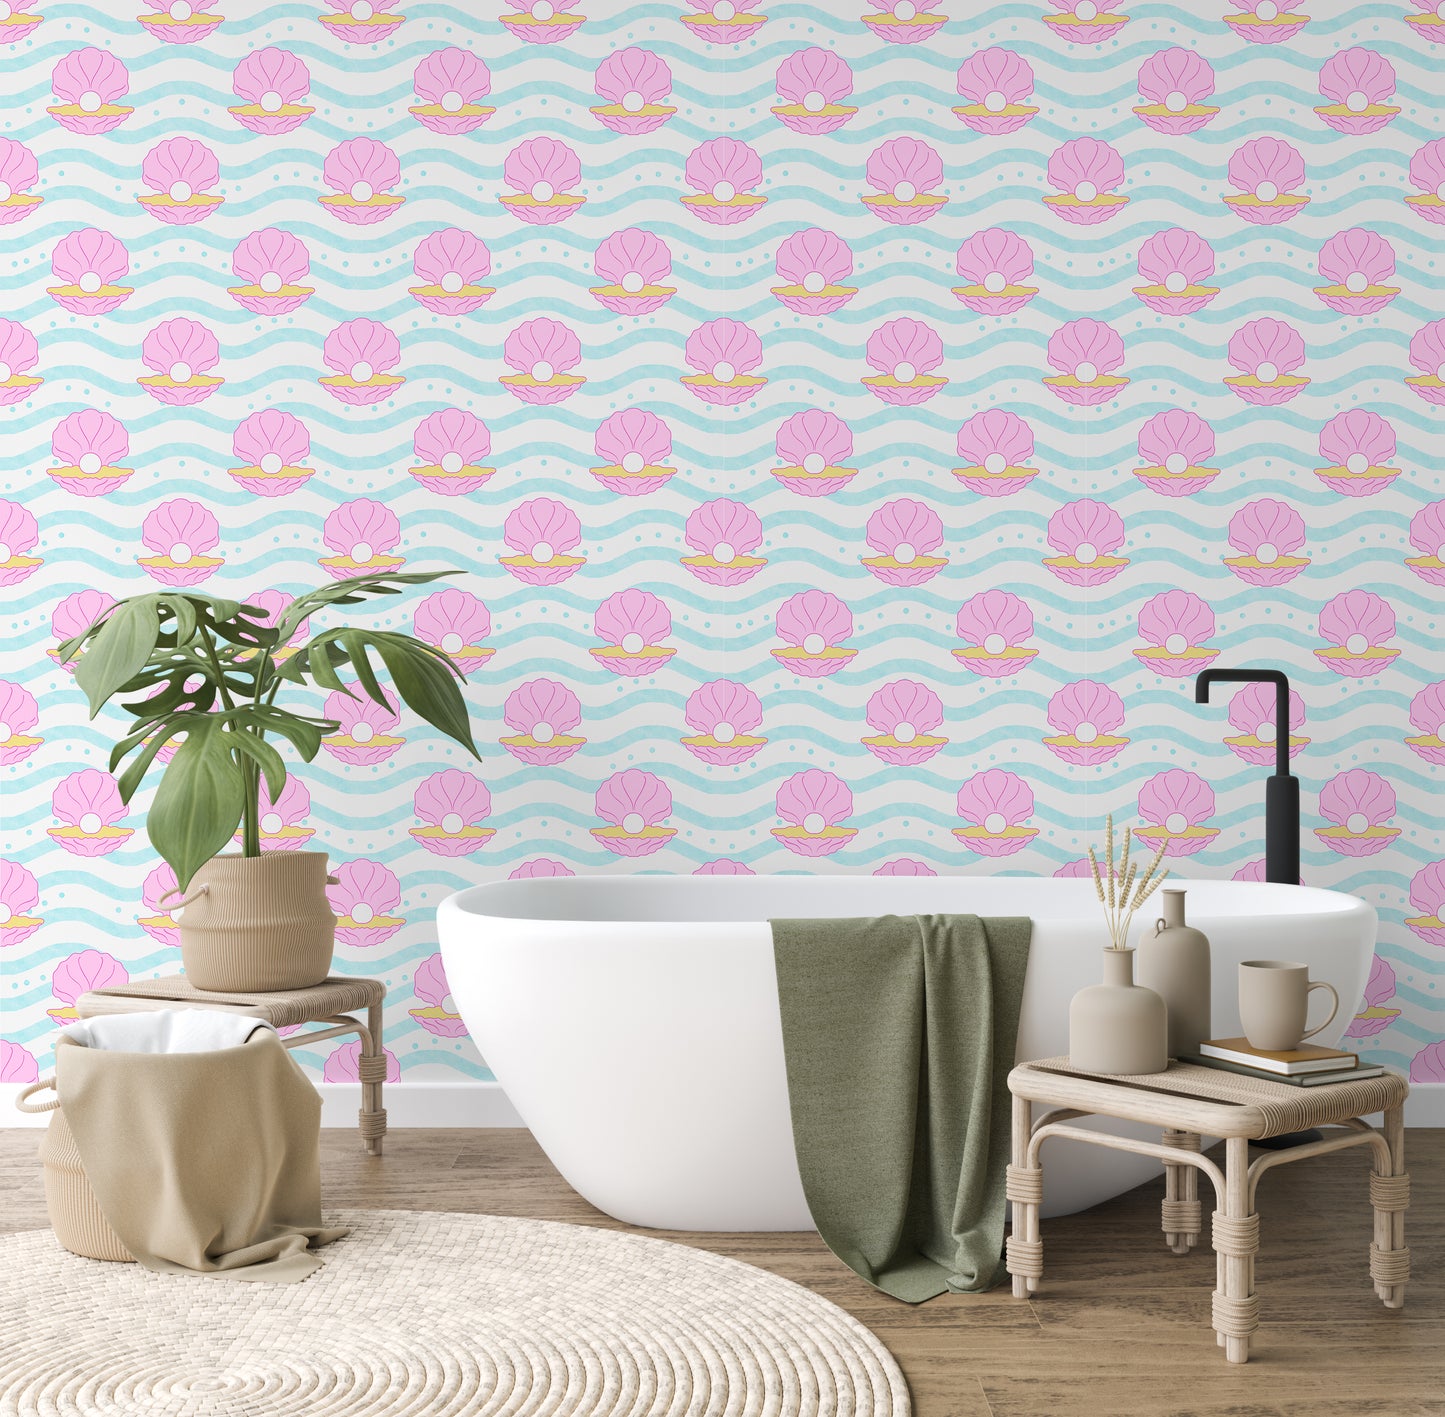 shell wallpaper for bathroom 